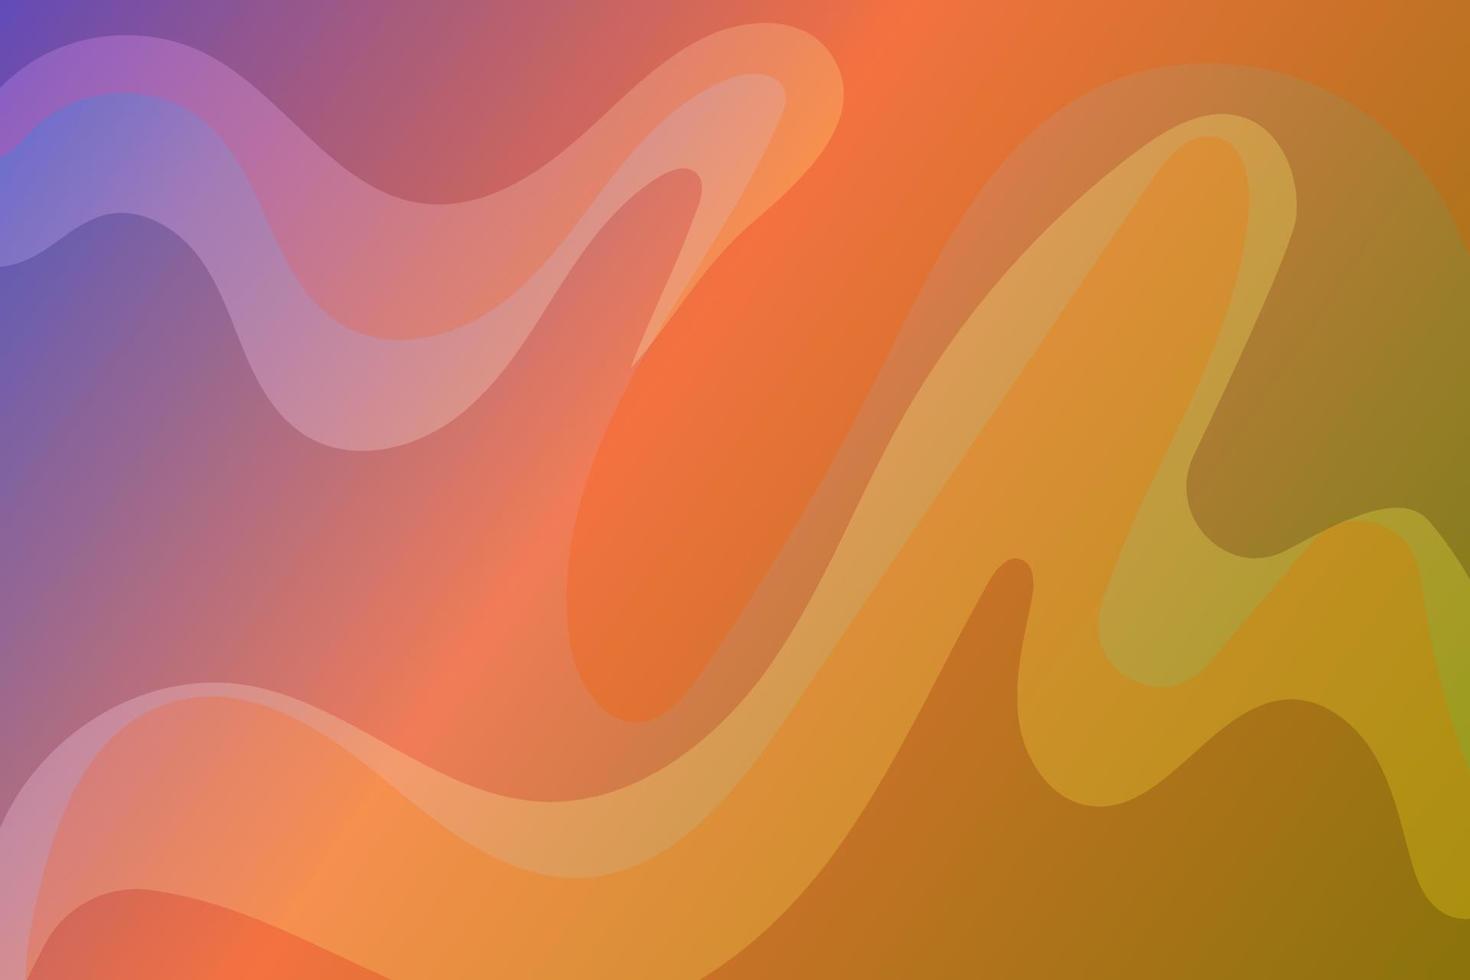 lege achtergrond abstracte shape.graphic patroon van abstracte elementen in gradiëntkleuren voor poster, achtergrond, uitnodiging en dekking vector